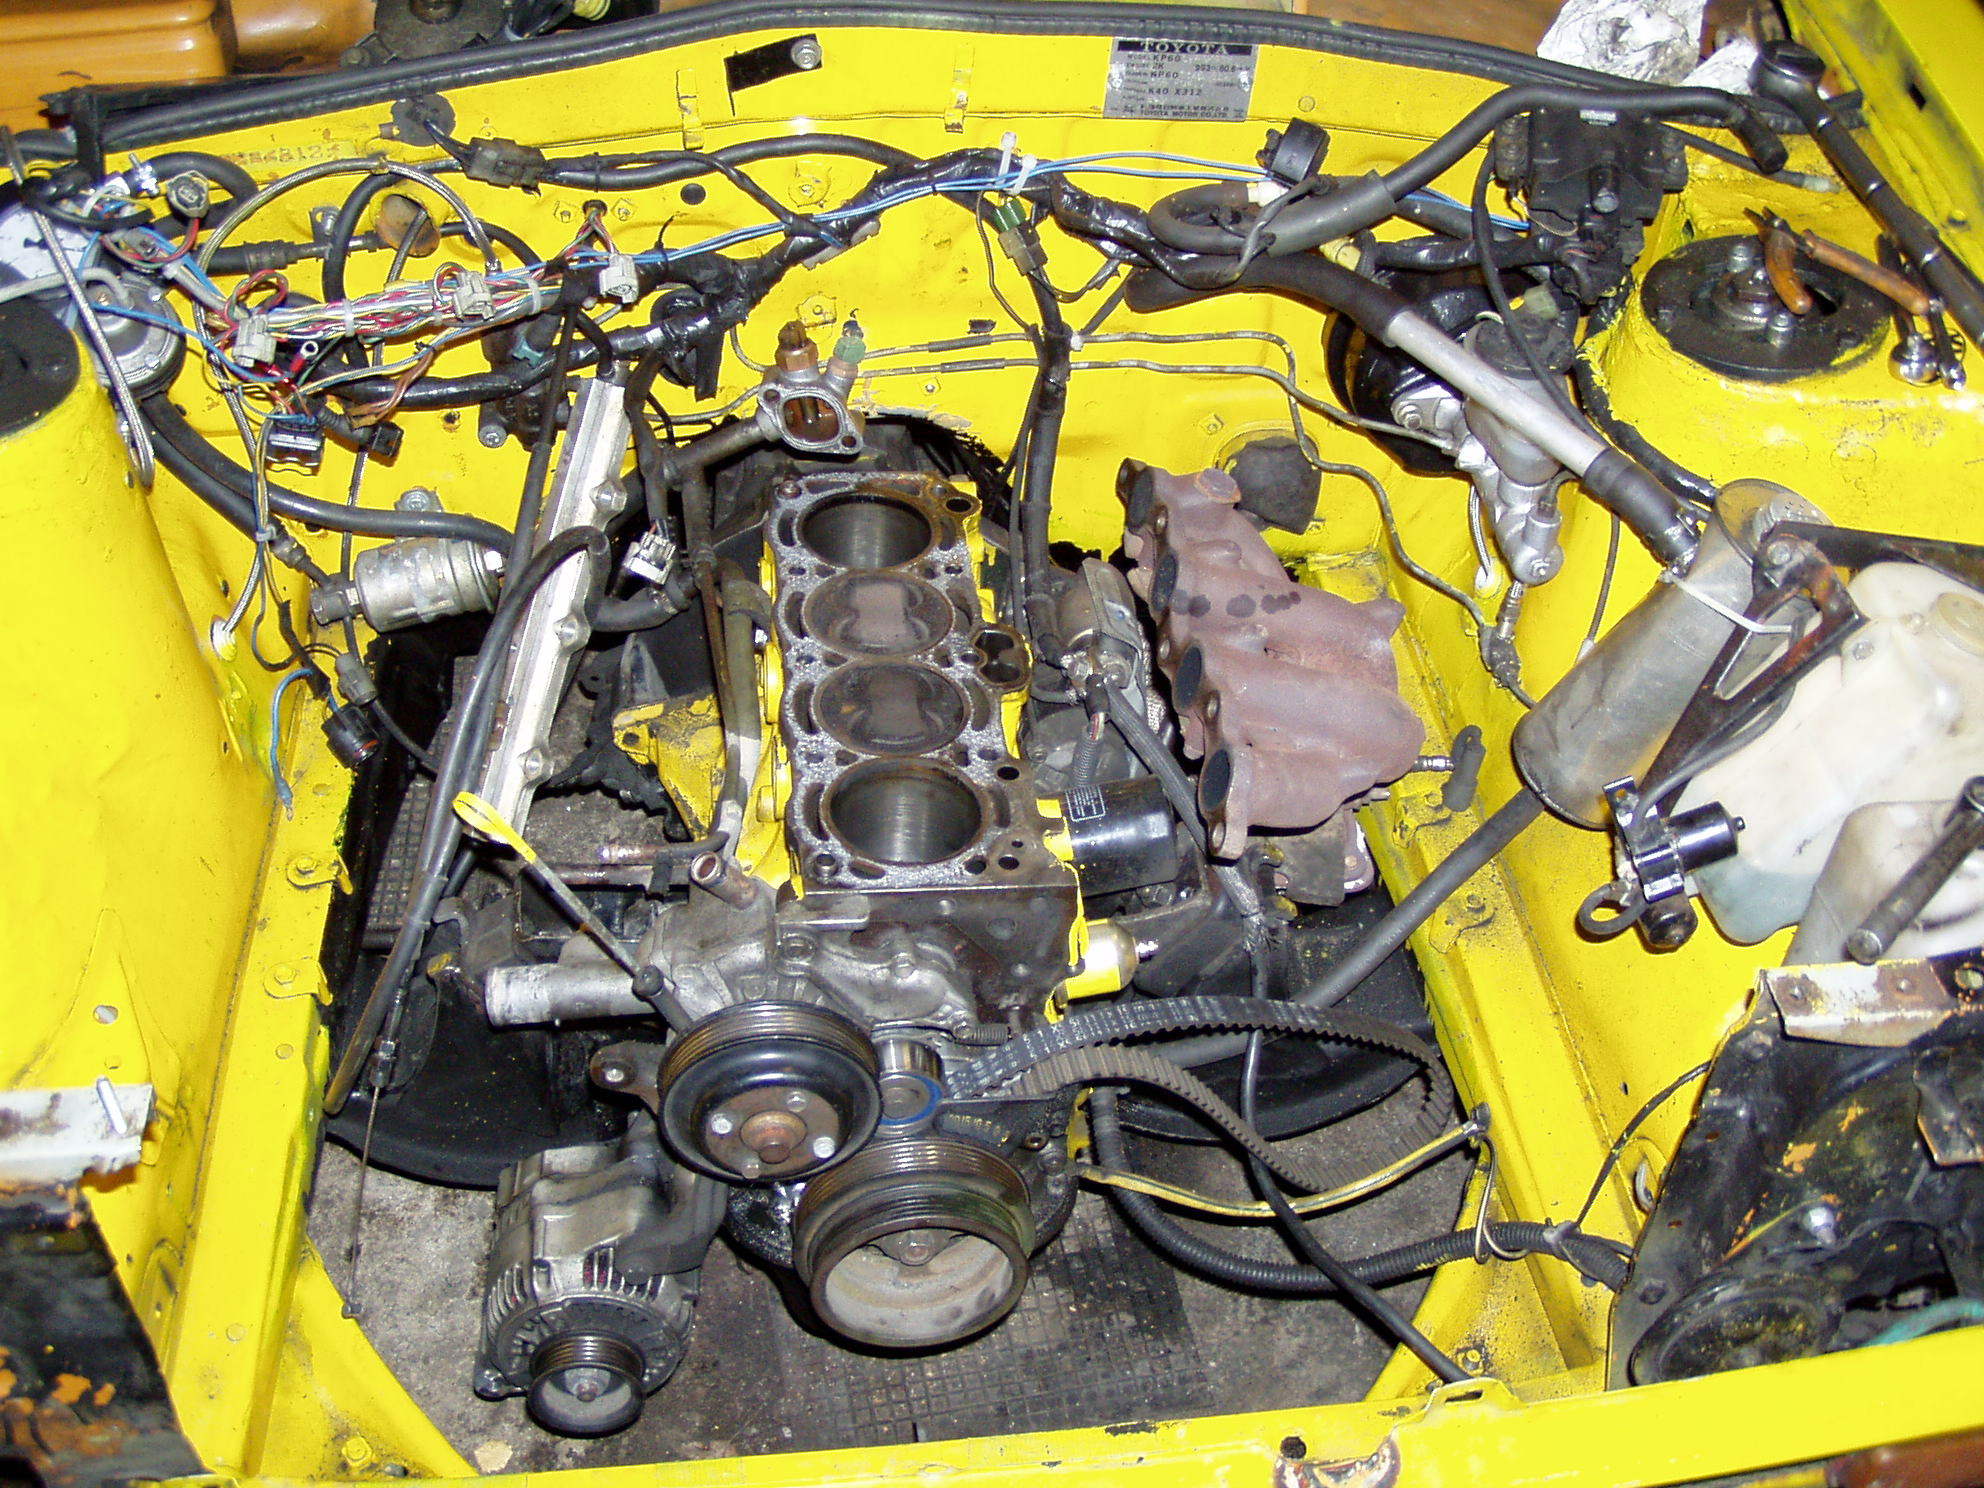 Starletin moottori 2004-2006, 23.10.2005, Alakerta.  Kone vaihteeksi osina.